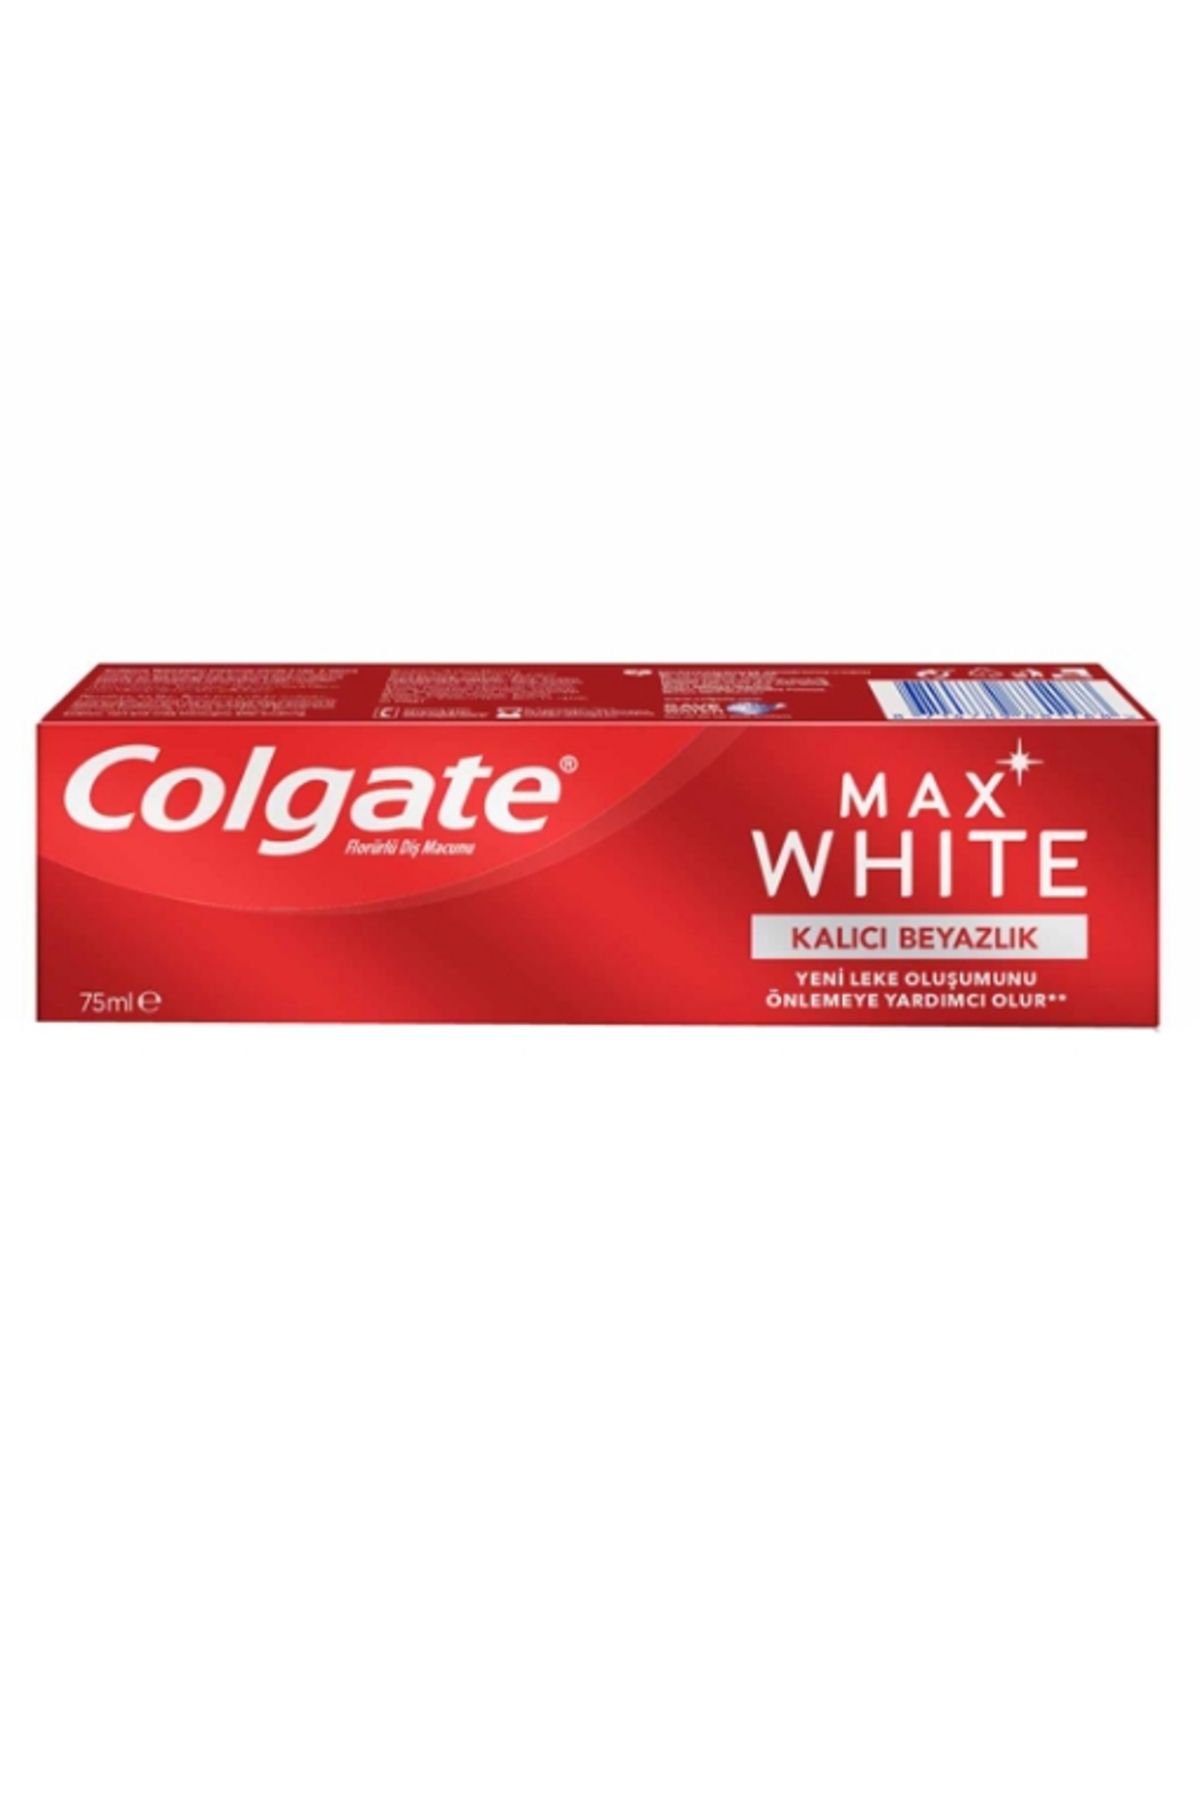 Colgate Max White Kalıcı Beyazlık 75 ml. (24'lü)